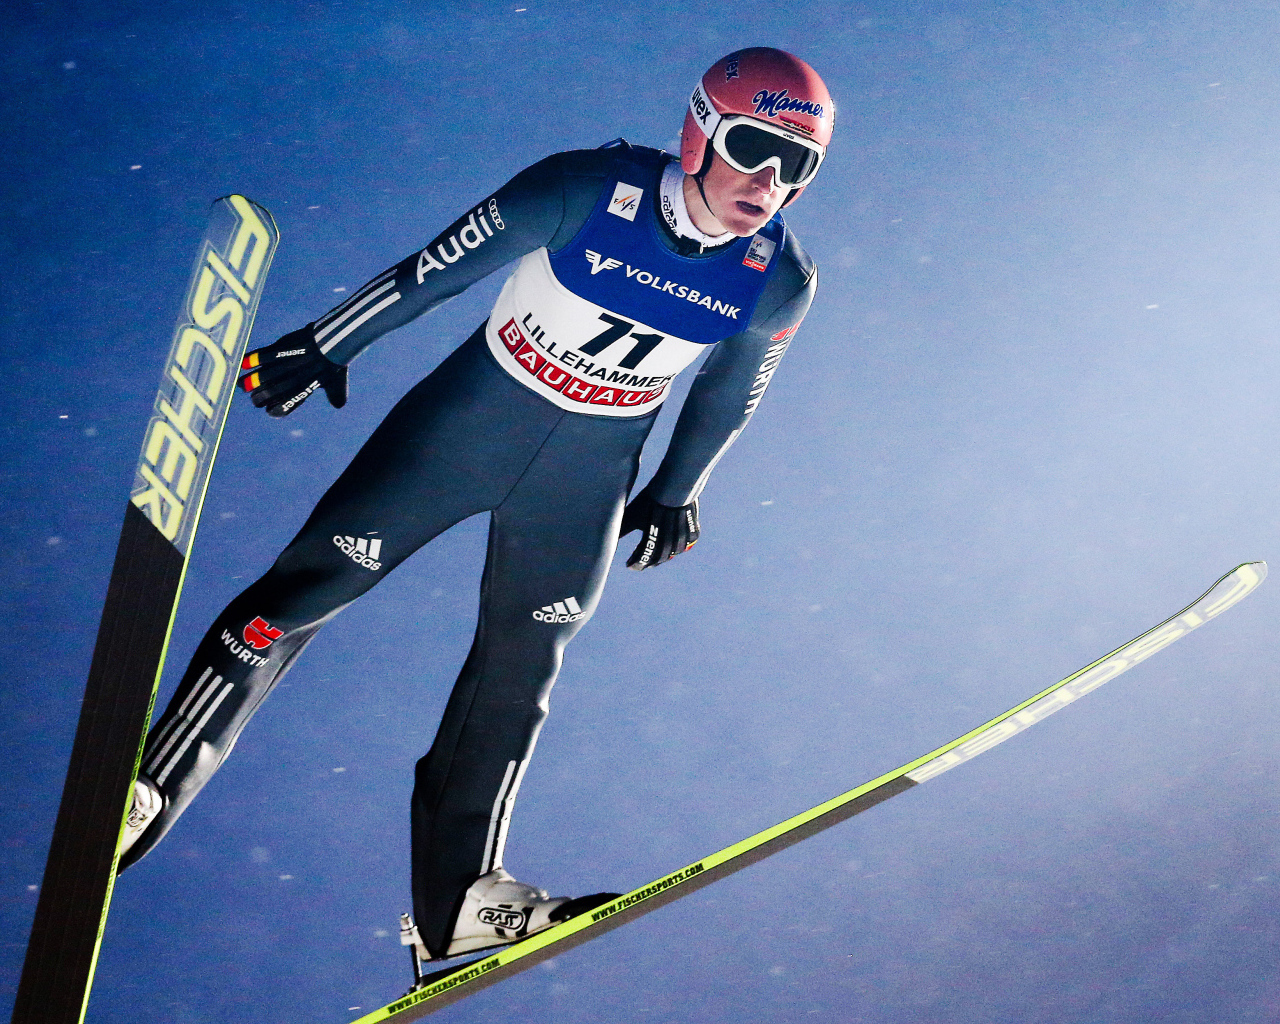 Зеверин Фройнд немецкий прыгун на лыжах золотая медаль на олимпиаде в Сочи 2014 год